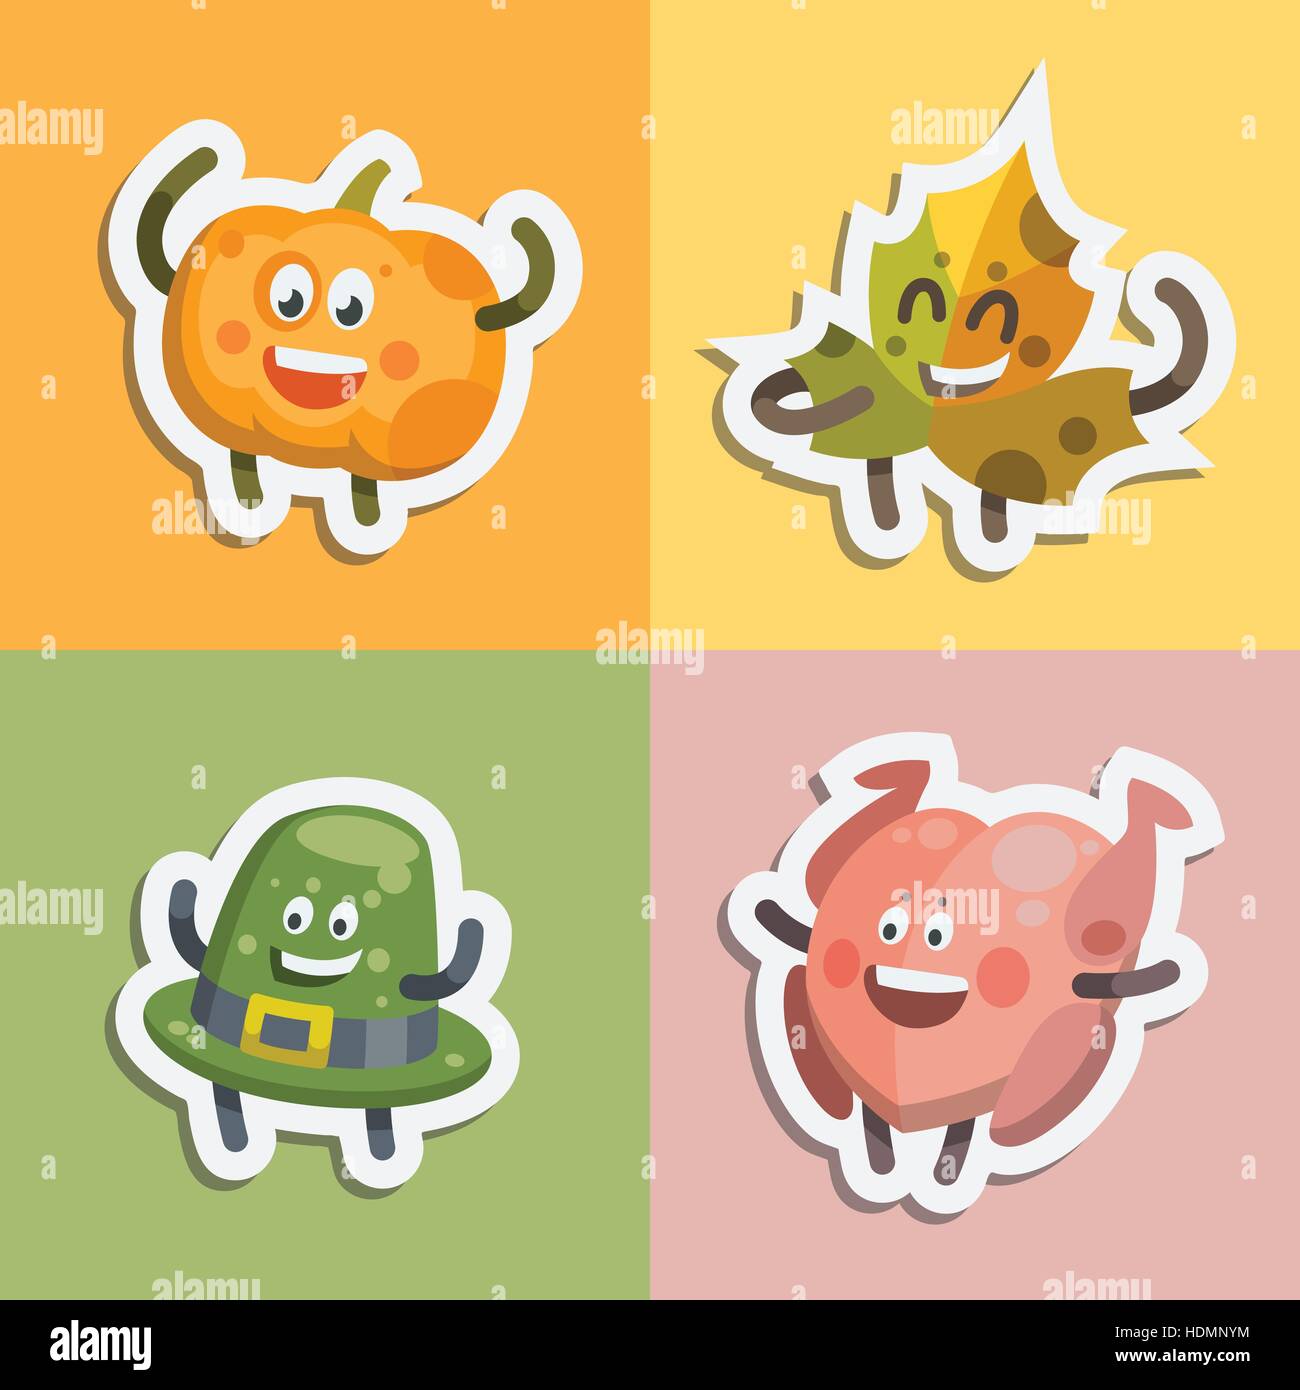 Illustrazione Vettoriale emoticon emoji set di adesivi sul tema delle vacanze d'autunno. Autunno emoticon felice giorno del ringraziamento. Emozioni diverse funny zucca Illustrazione Vettoriale